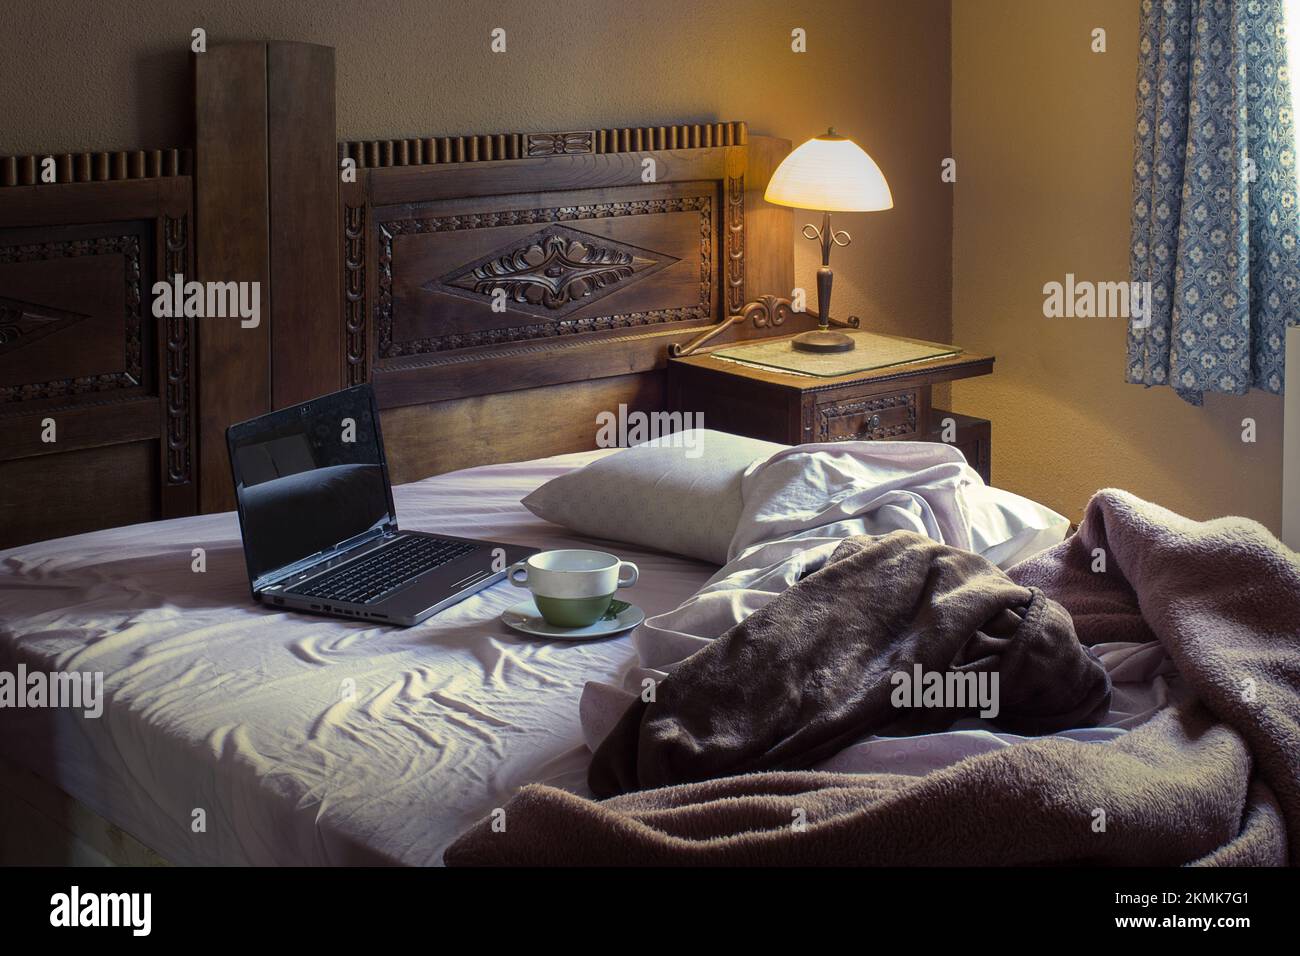 Ein rustikales Schlafzimmer mit einer Tasse Suppe auf einem schmutzigen Teller neben einem offenen Laptop auf einem ungemachten Bett mit Decken, die von einer Nachttischlampe beleuchtet werden und Sonnenlicht vom Stockfoto